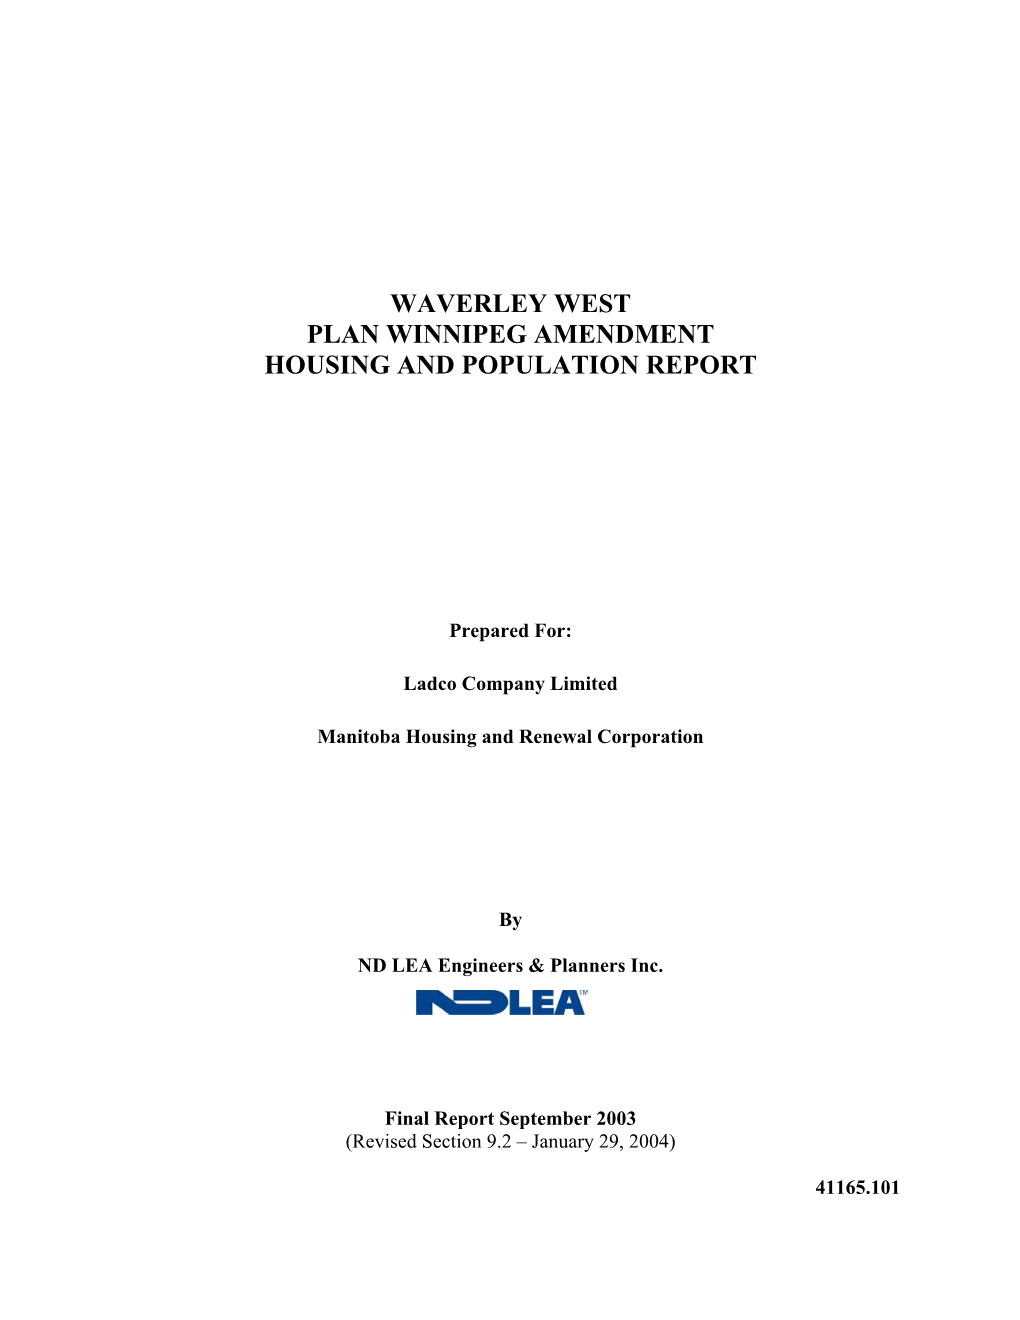 Waverley West Plan Winnipeg Amendment Housing and Population Report